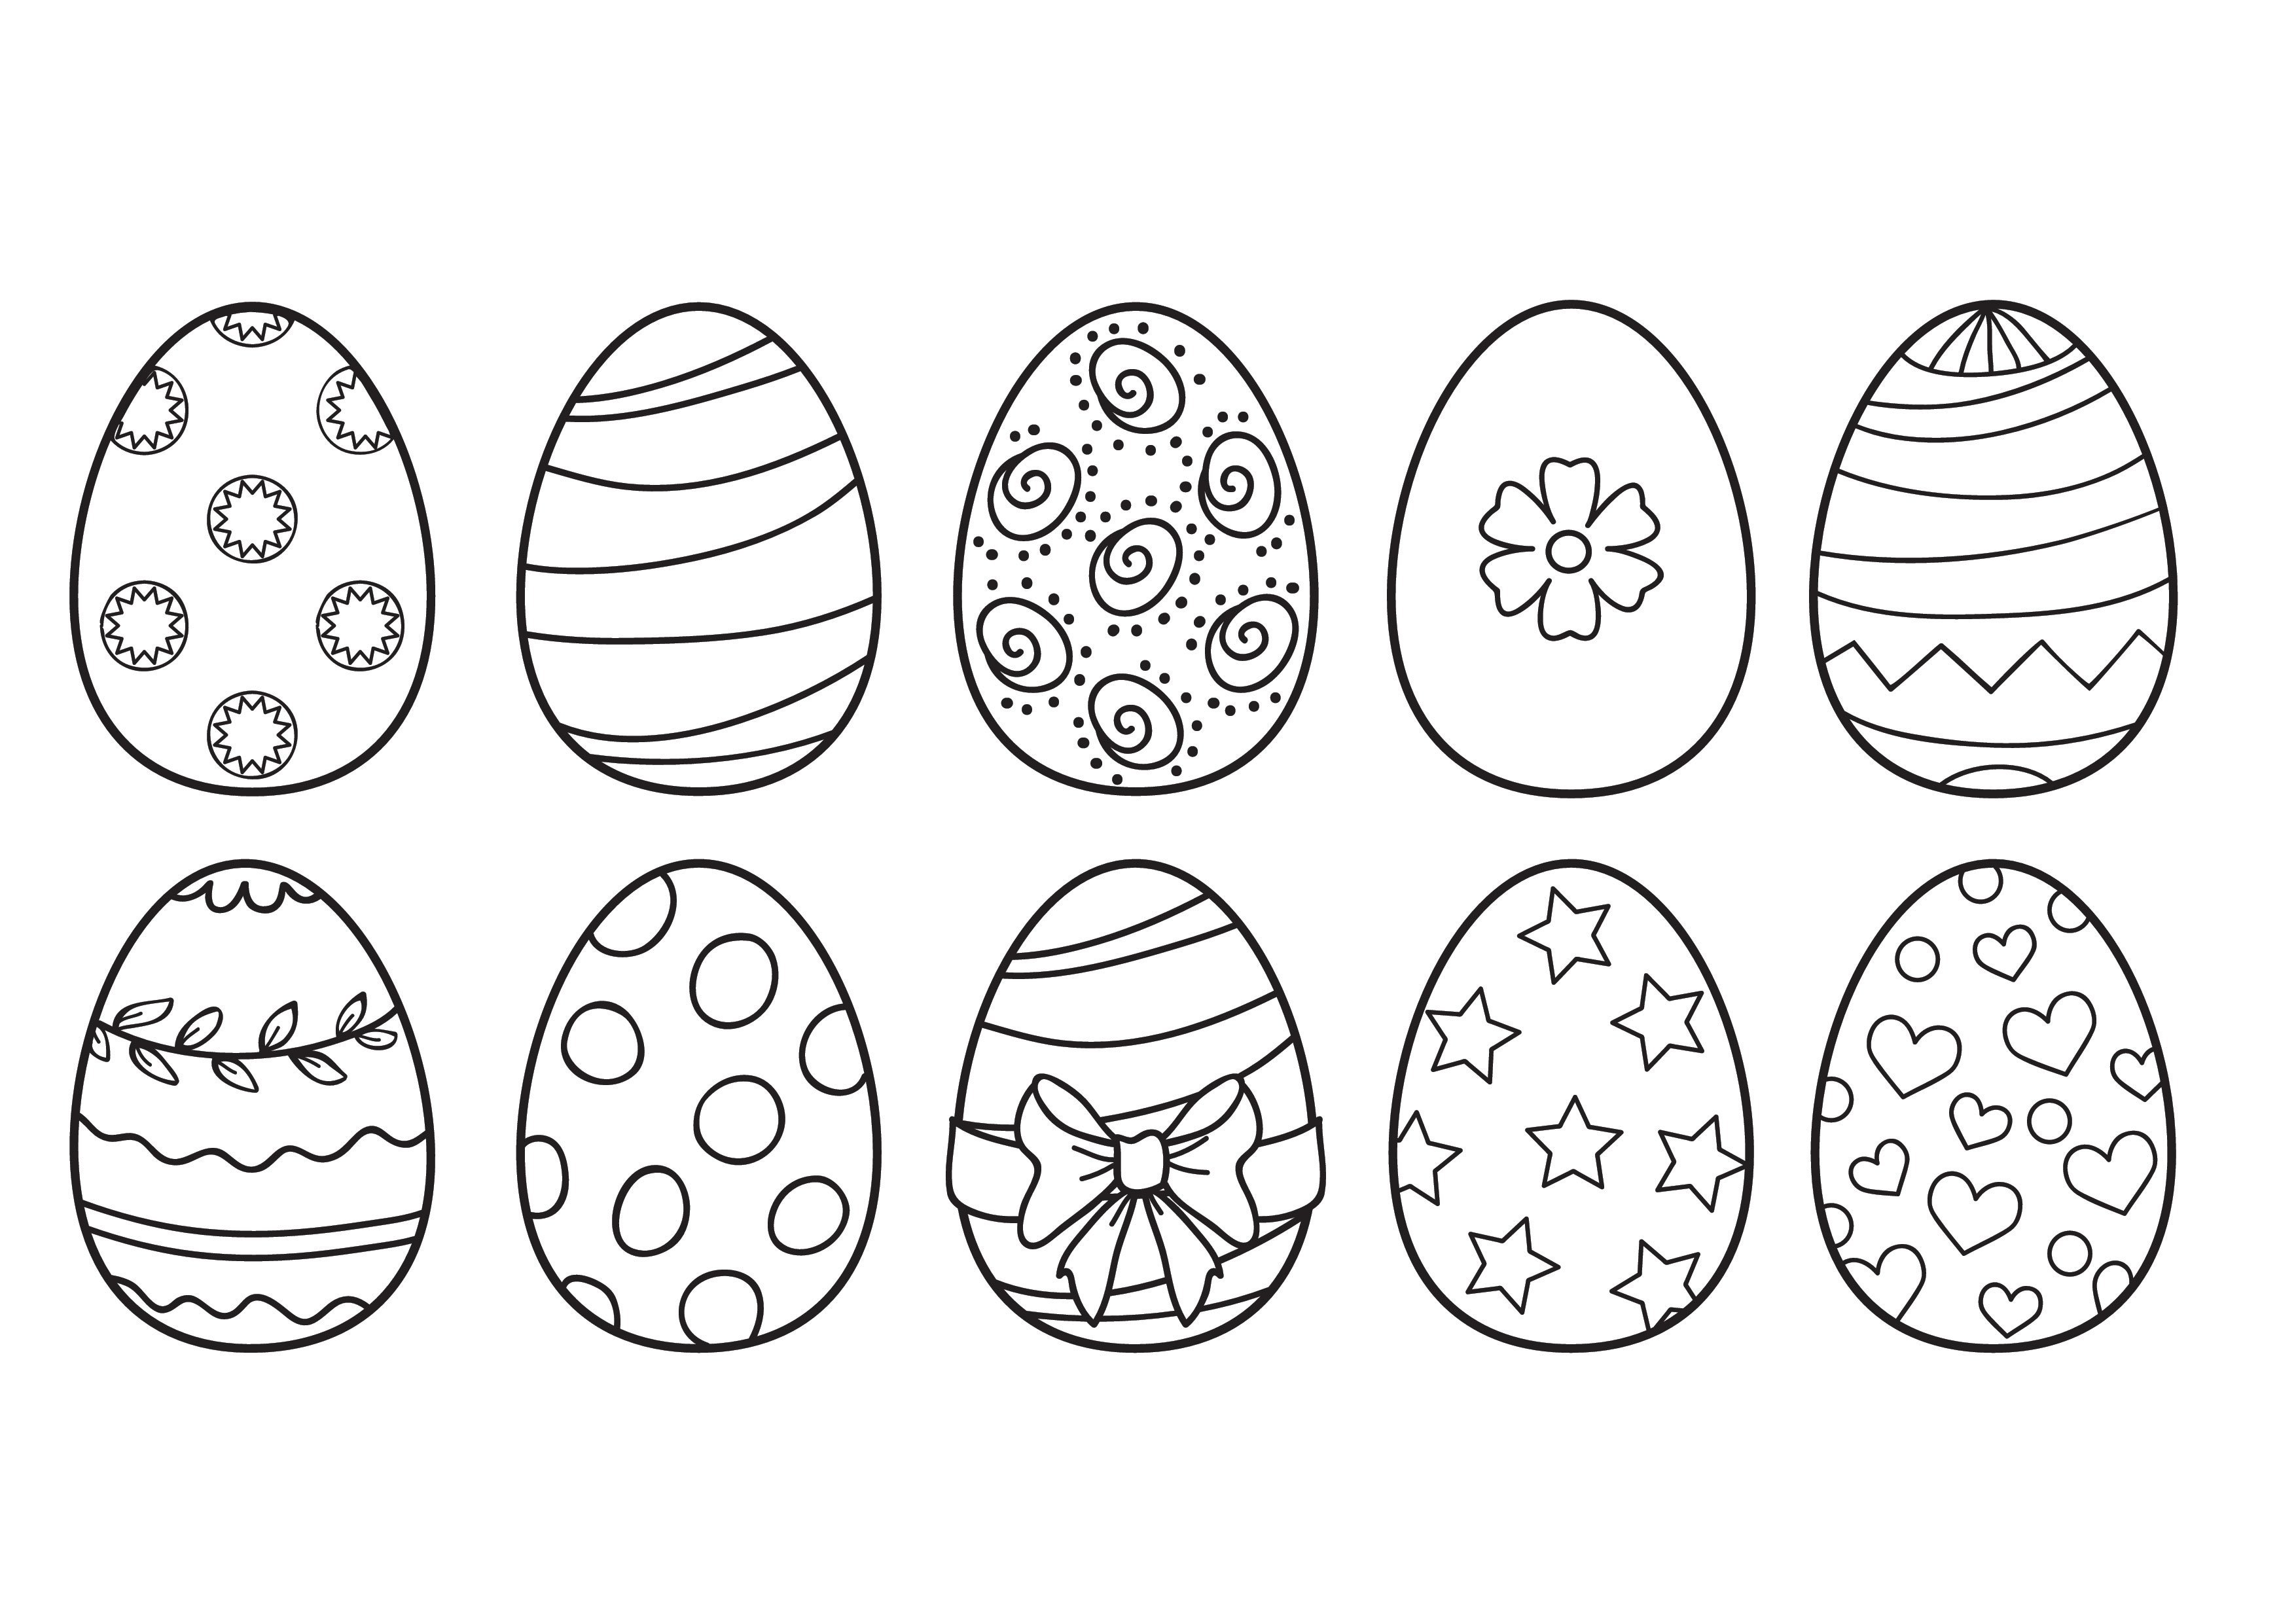 Пасхальное яйцо рисунок для детей. Раскраски пасочных яиц. Пасхальное яйцо раскраска. Яйца на Пасху раскраска. Пасхальное яйцо раскраска для детей.